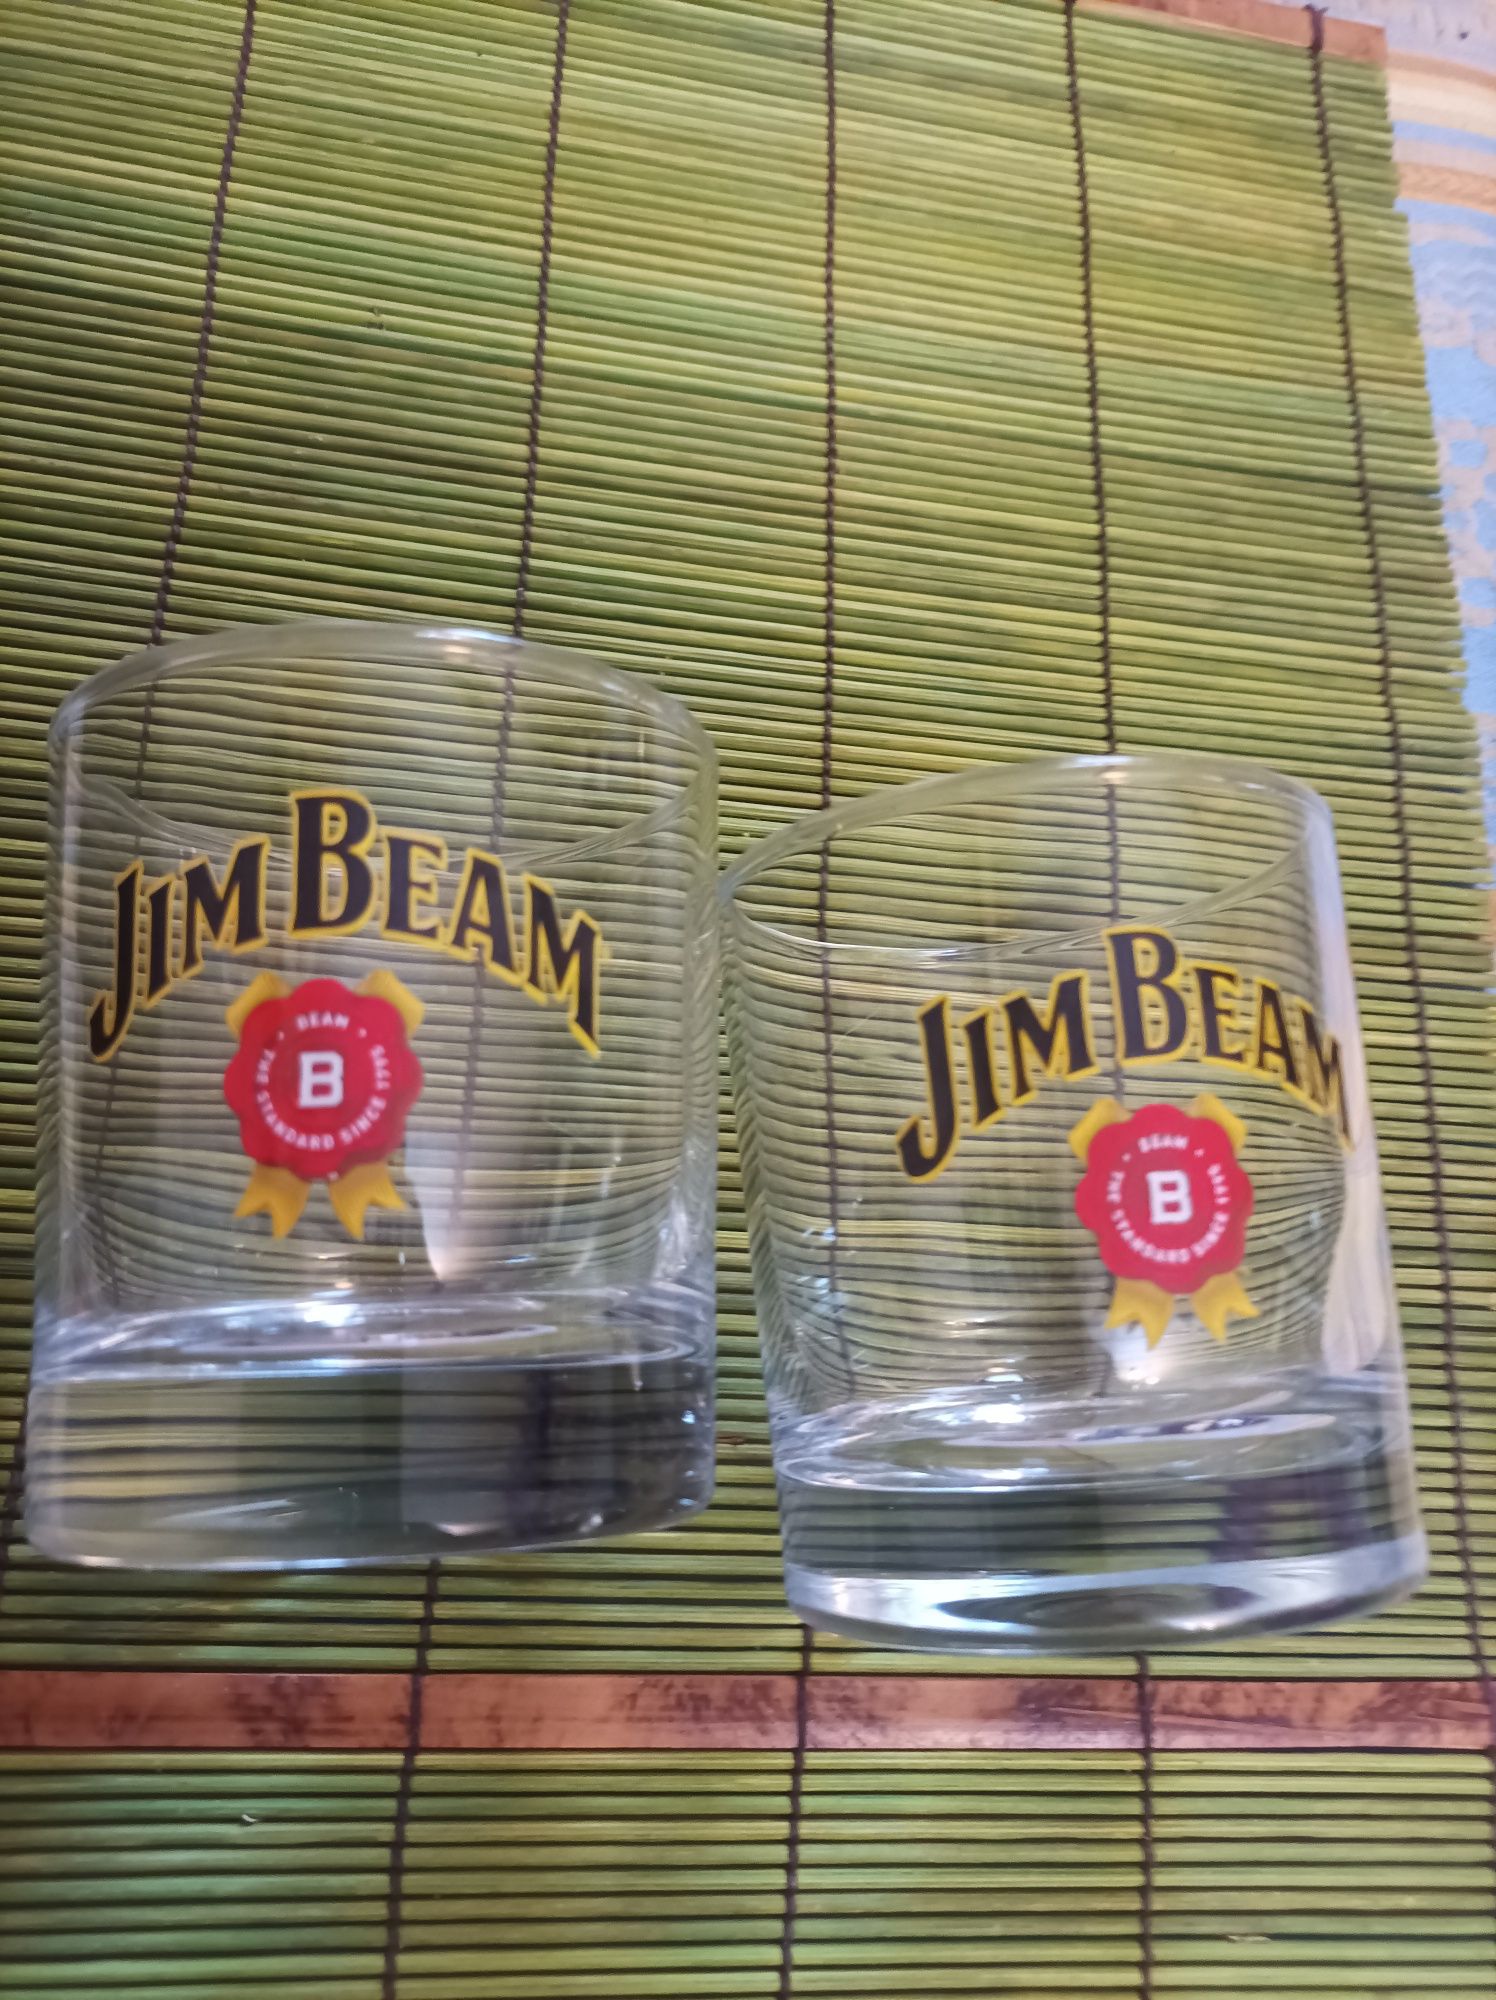 Рекламни чаши за уиски - Jim Beam и Four Roses